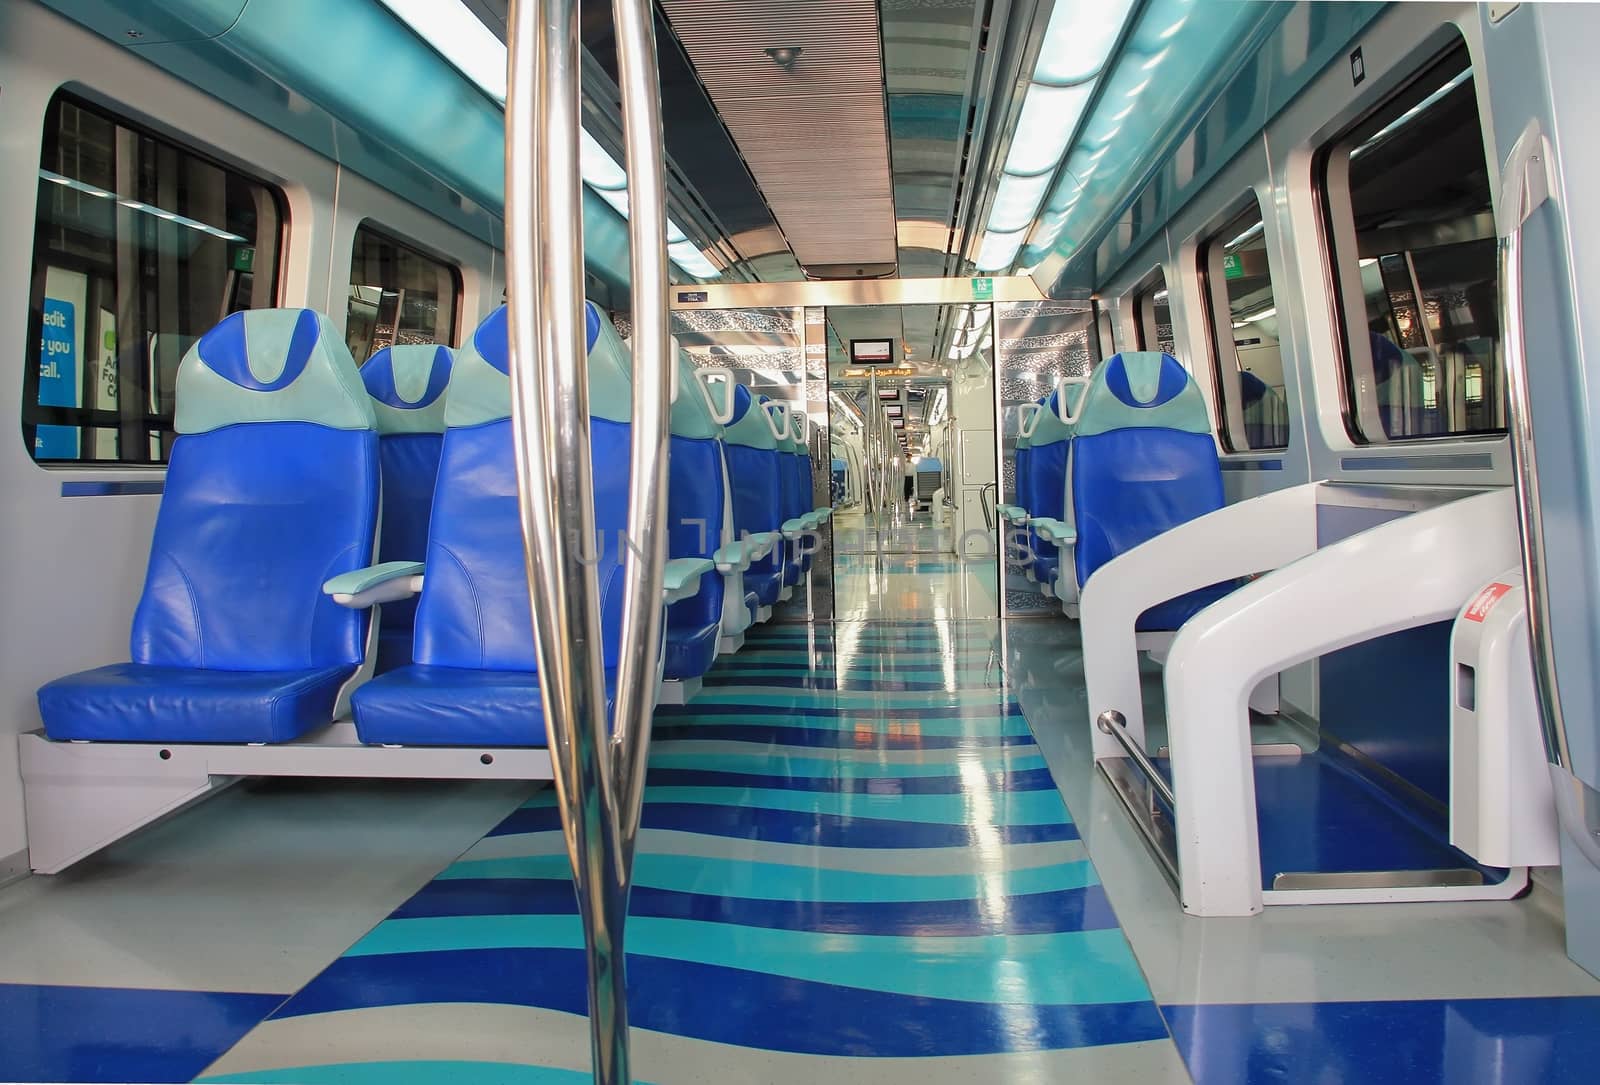 subway train in Dubai, subway trains inside the car interior, tr by KoliadzynskaIryna